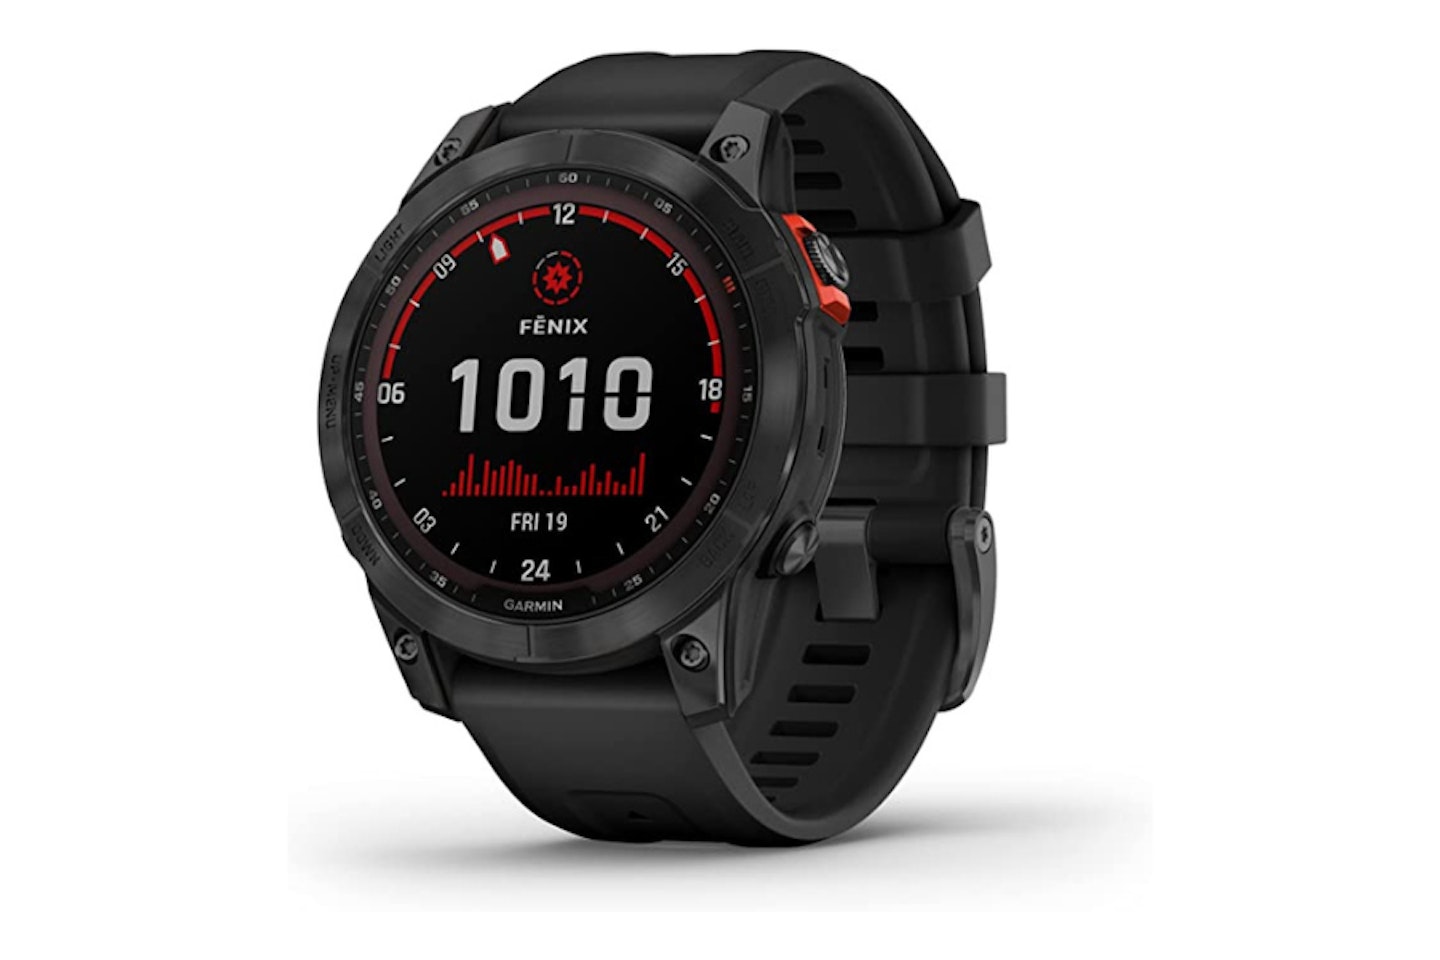 Garmin fēnix 7 Solar Multisport GPS Watch